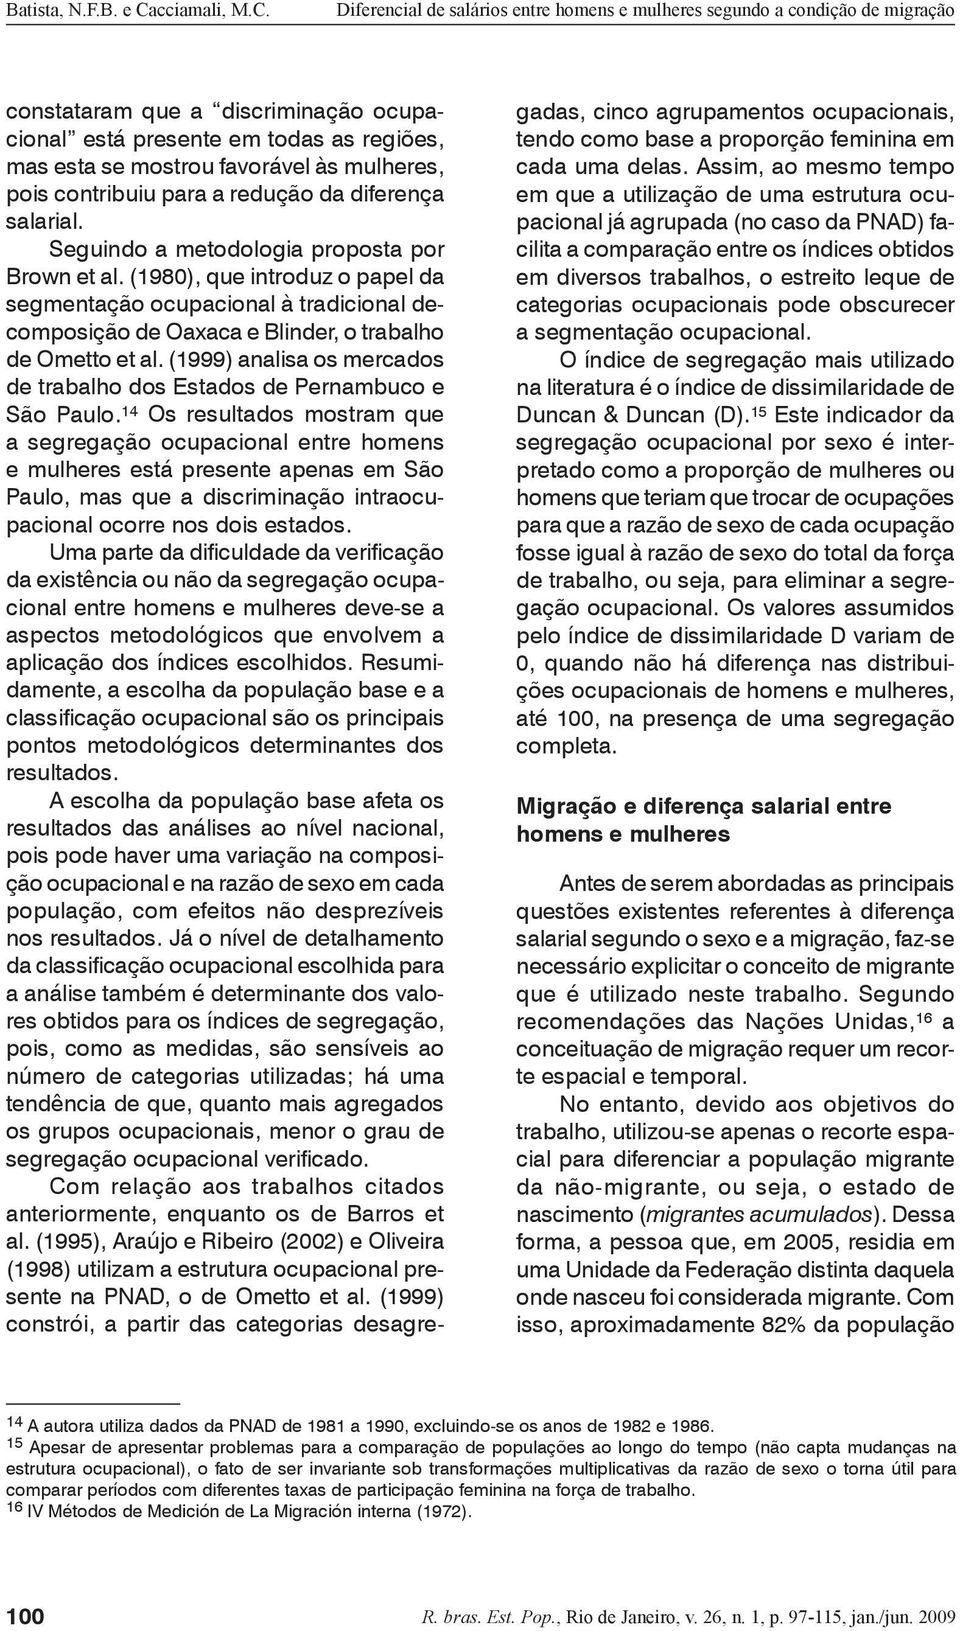 (1999) analisa os mercados de trabalho dos Estados de Pernambuco e São Paulo.